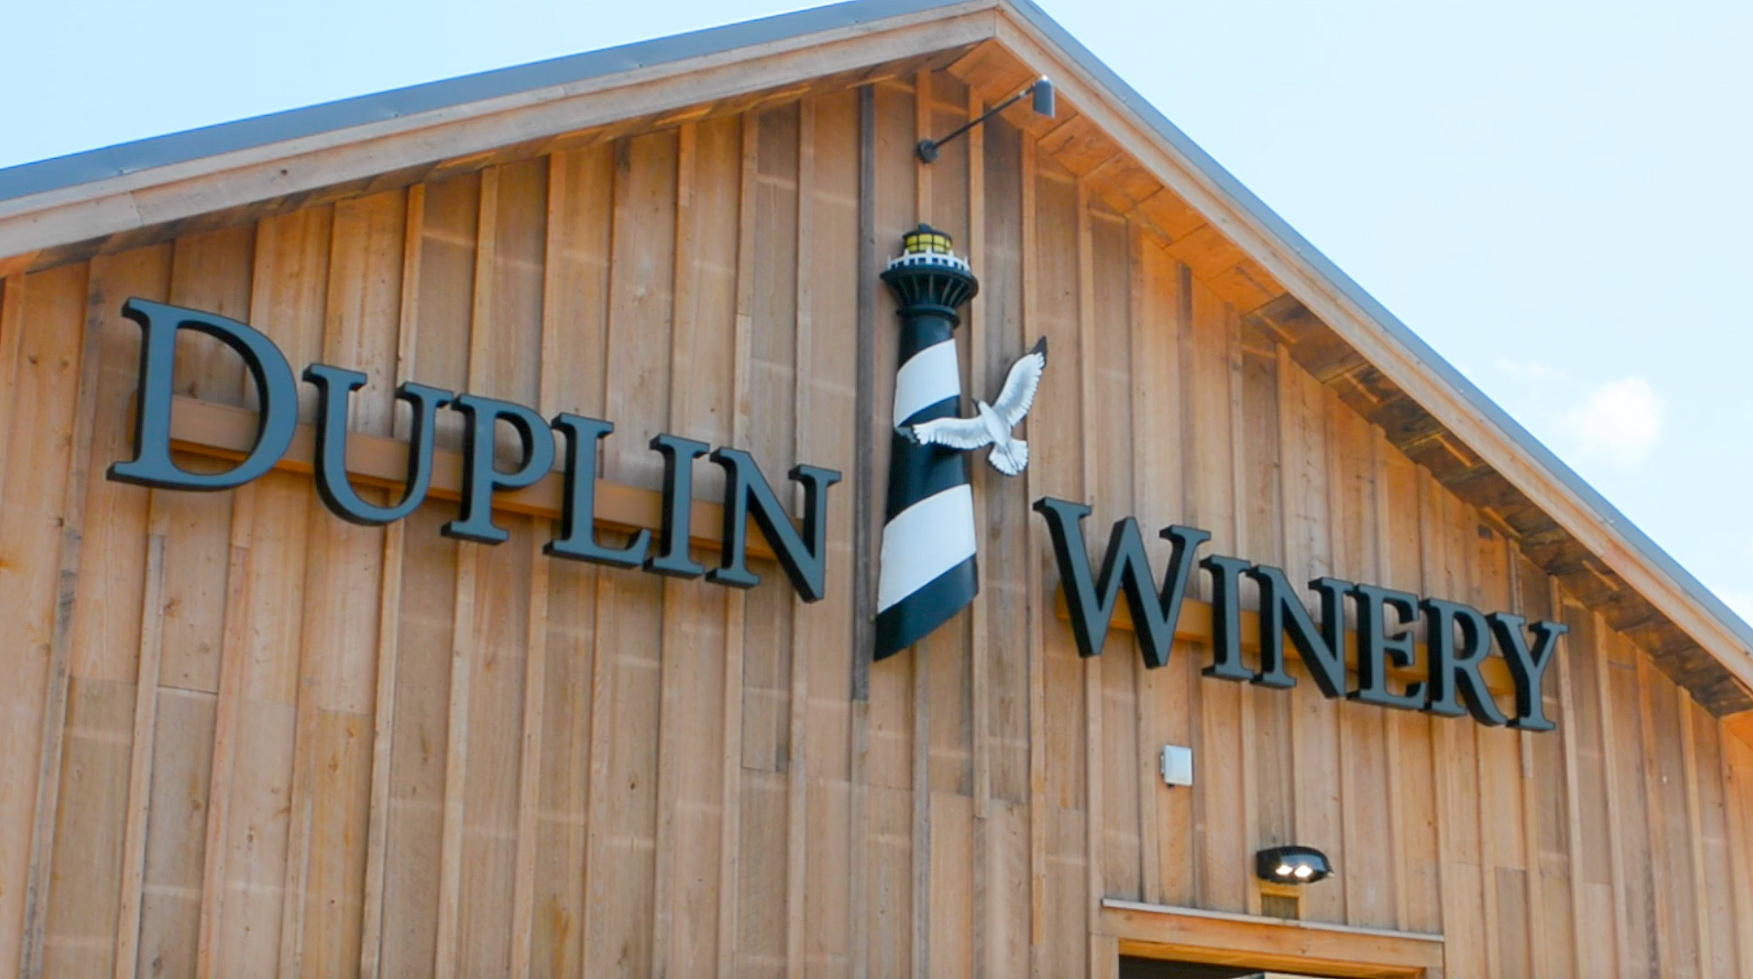 Duplin Winery Video